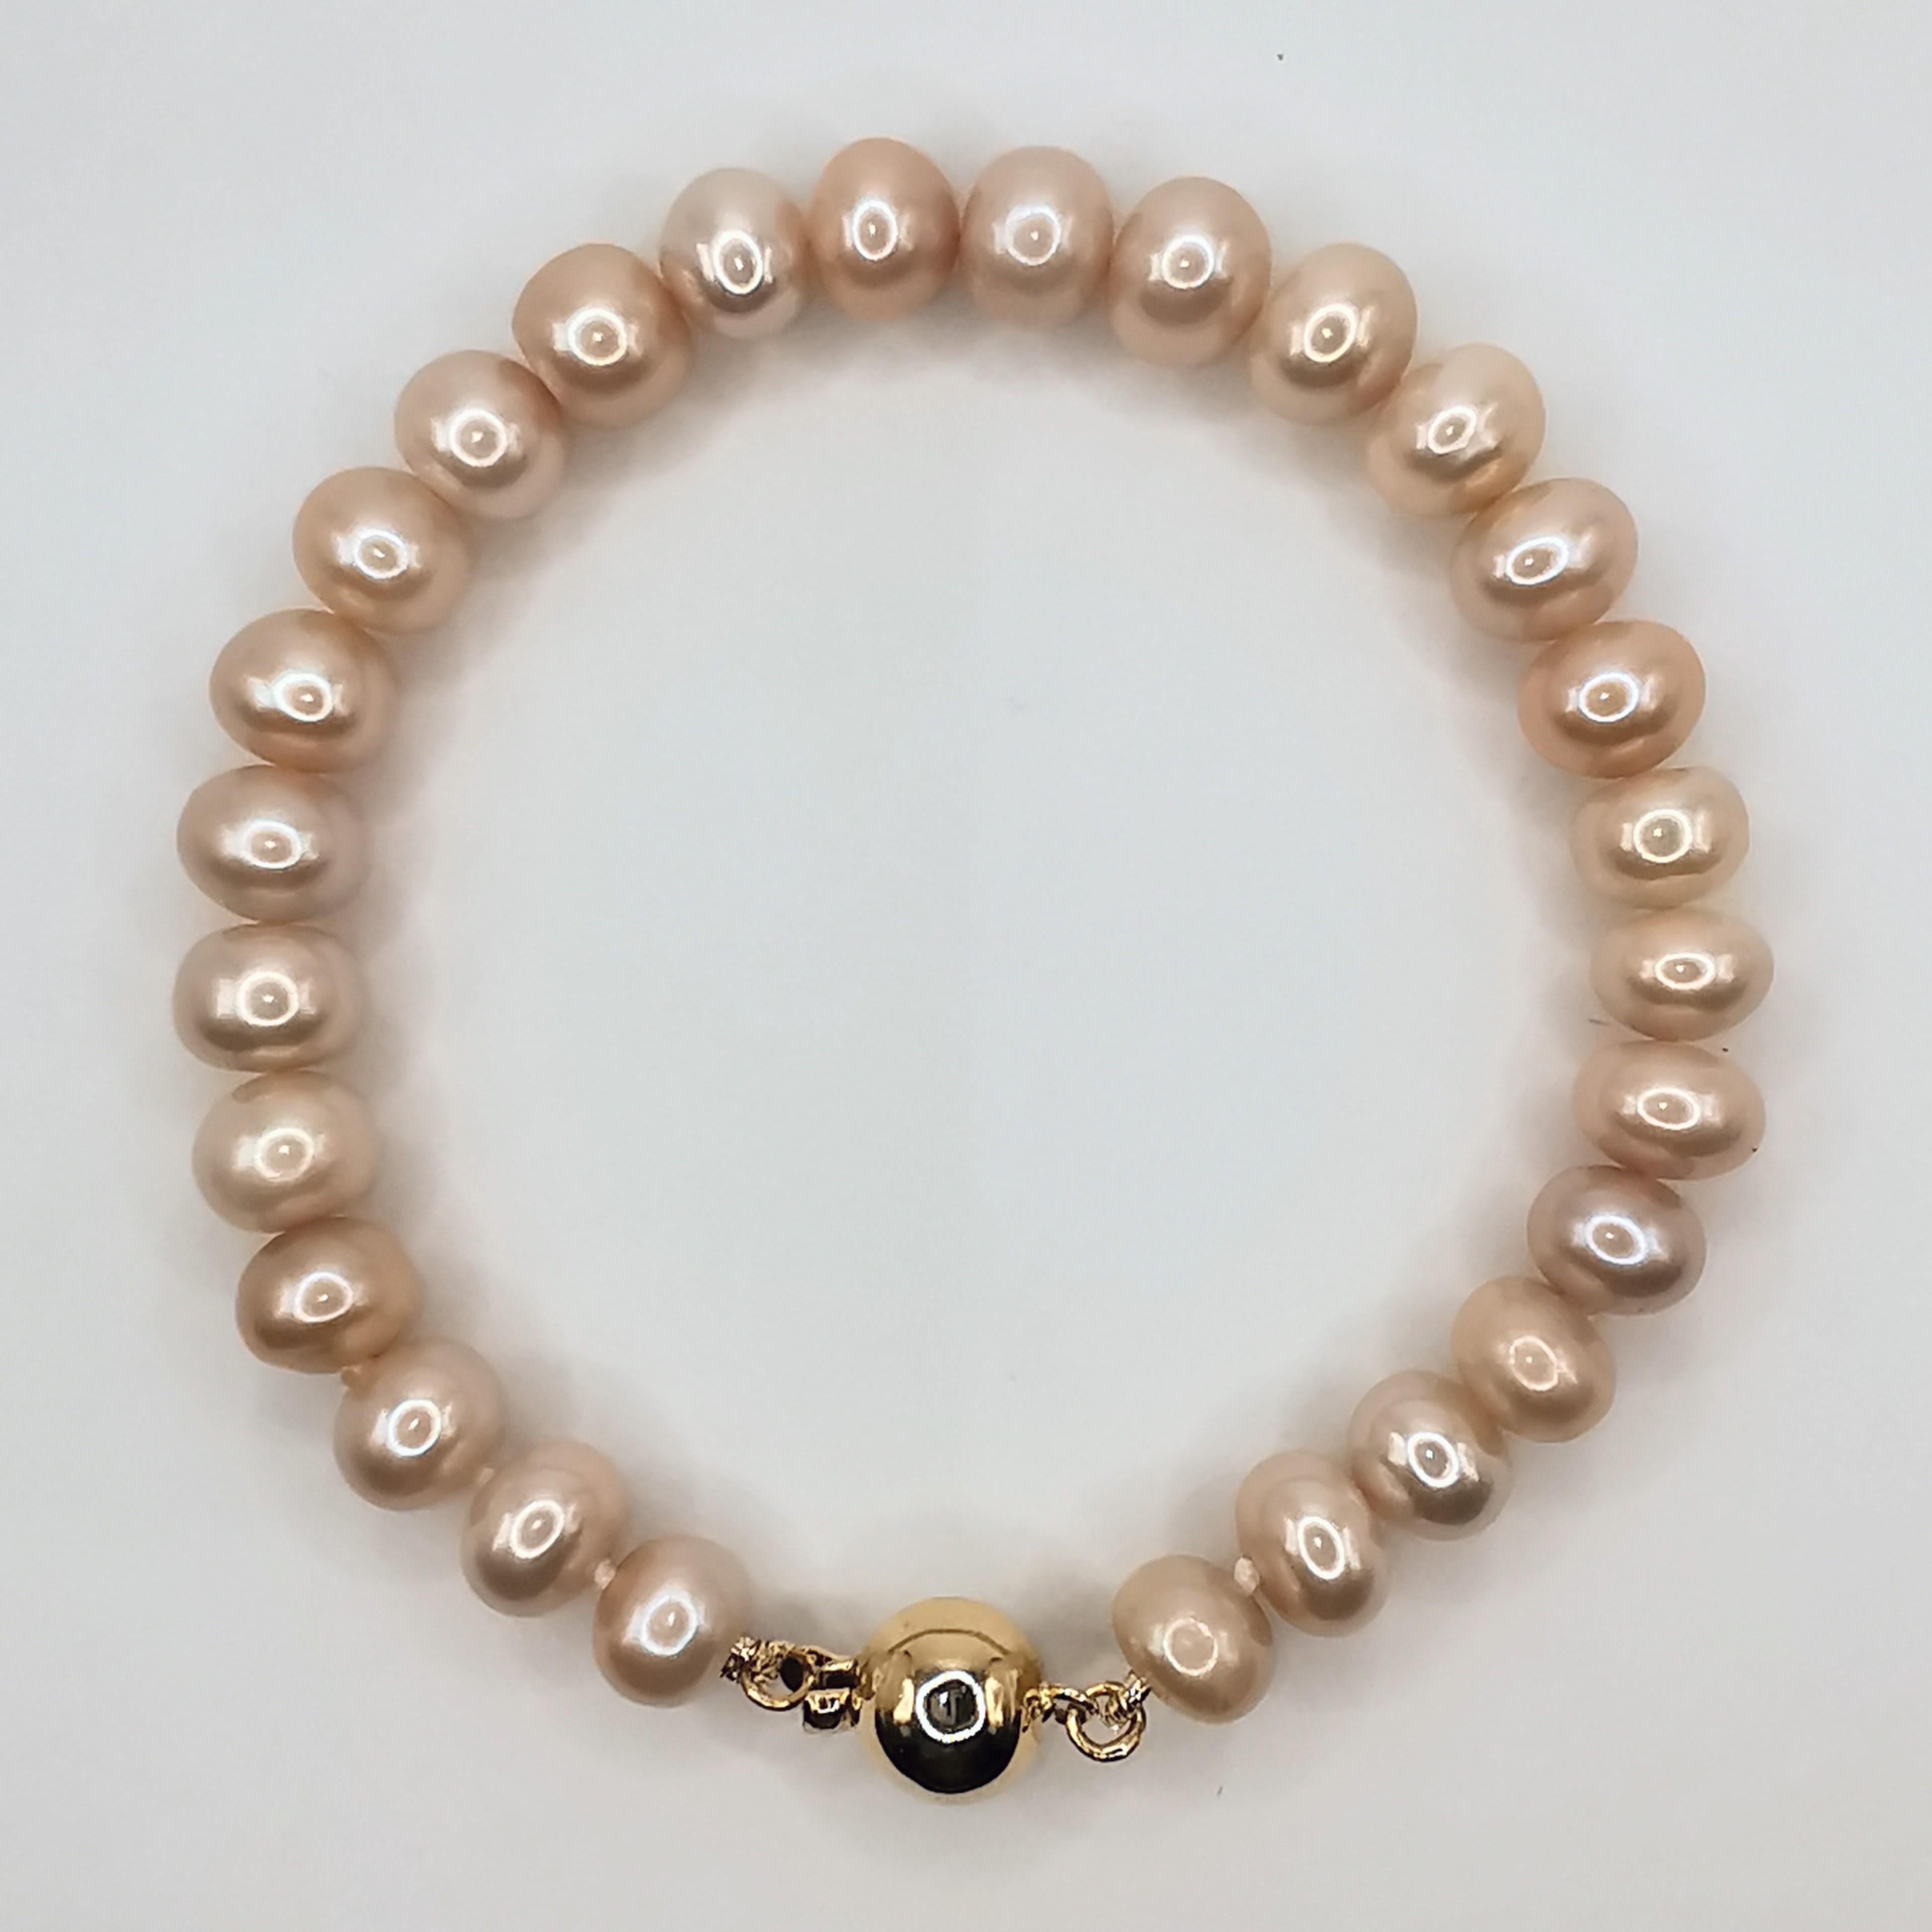 Cet élégant bracelet est composé d'un rang de perles roses naturelles de culture, chacune étant sélectionnée à la main pour son lustre et sa couleur uniques. Mesurant 7 pouces de long, les perles mesurent entre 7 et 8 mm, ce qui donne au bracelet un